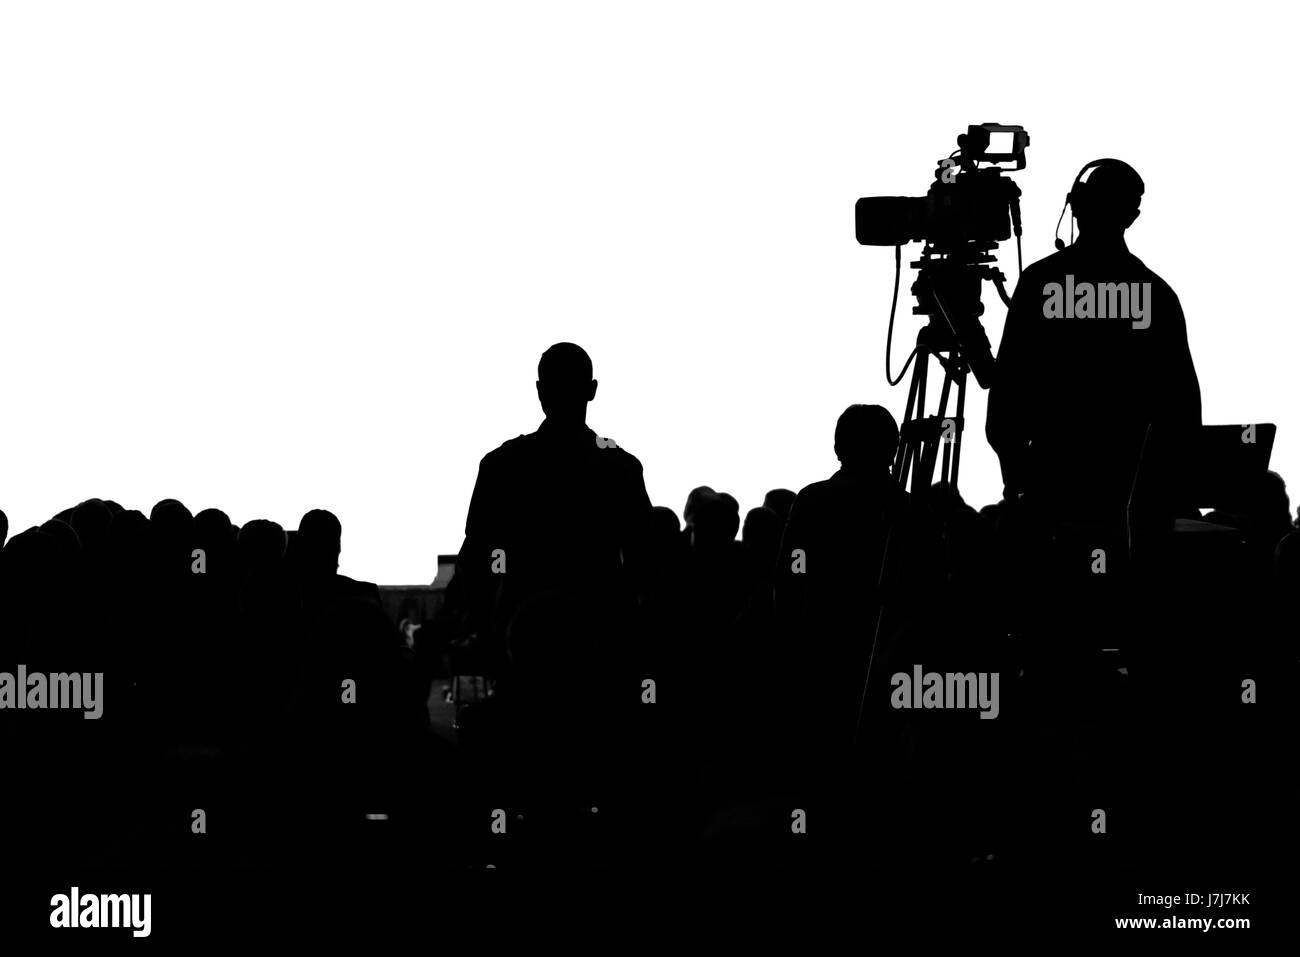 Conférence de presse de télévision silhouette caméraman production Banque D'Images